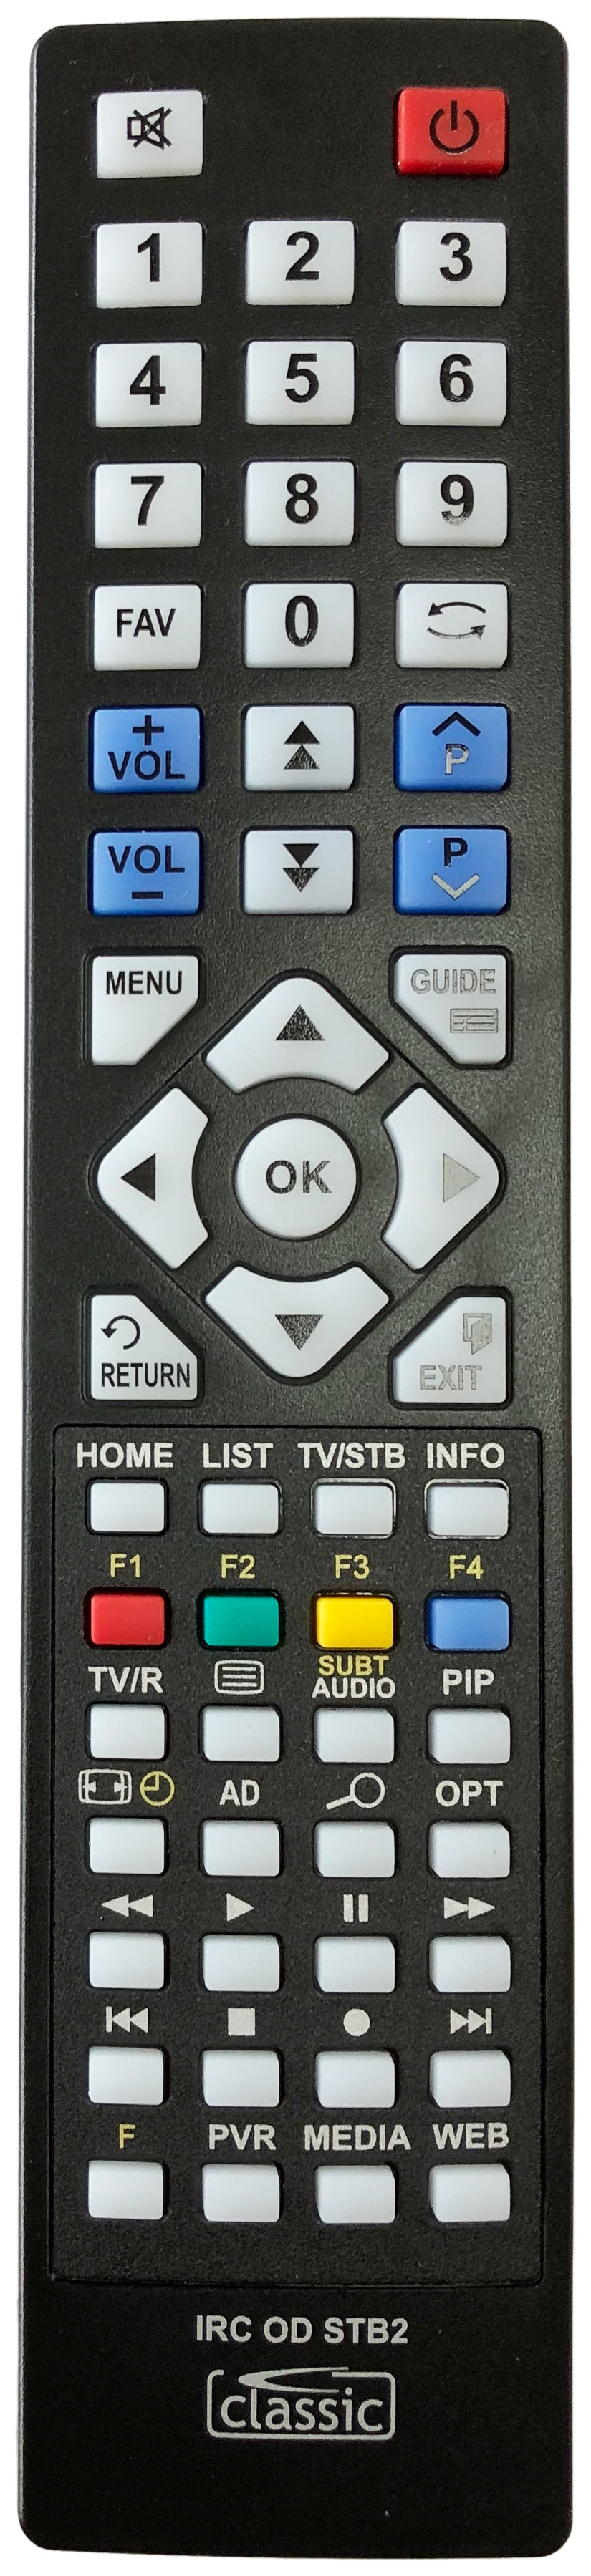 HUMAX HDR-1000S 1TB Remote Control Alternative